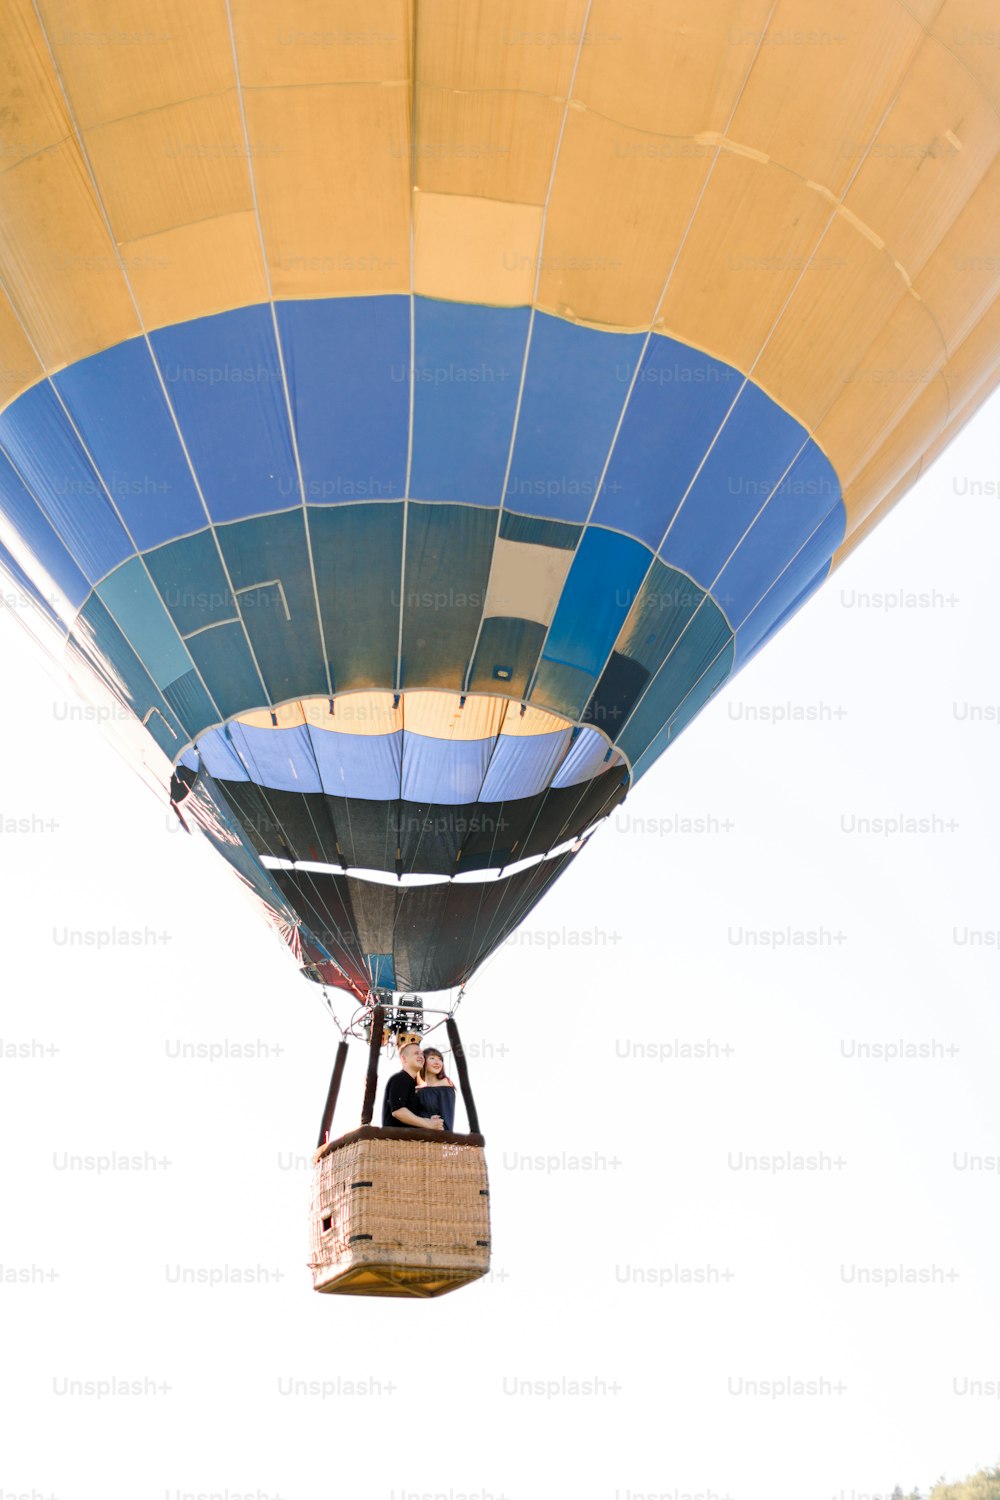 Schönes romantisches Paar umarmt sich im Korb des Heißluftballons und fliegt im Sommer sonnigen Abend. Romantisches Abenteuer, Liebe im Flugkonzept. Blick vom Land.